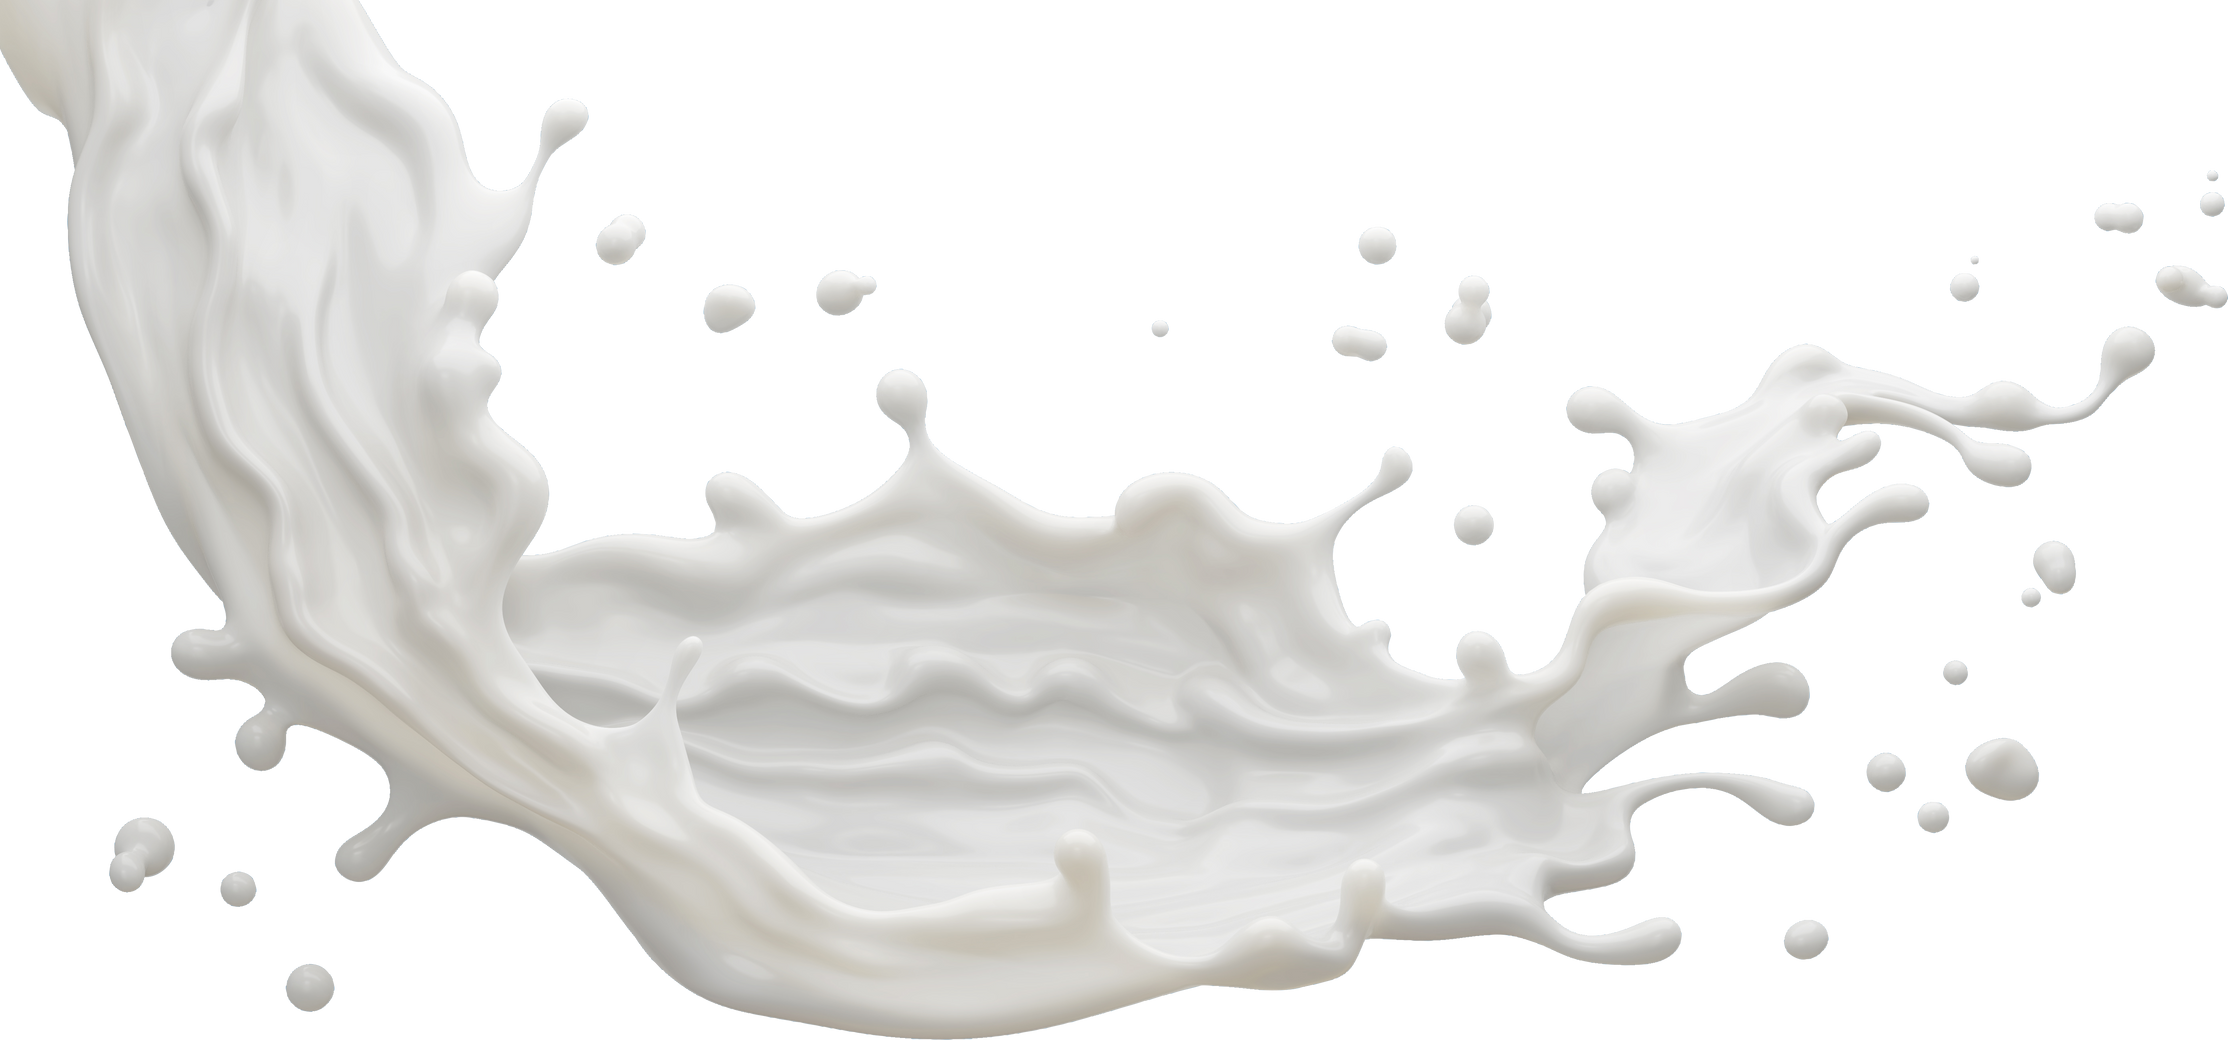 milk or Yogurt splash